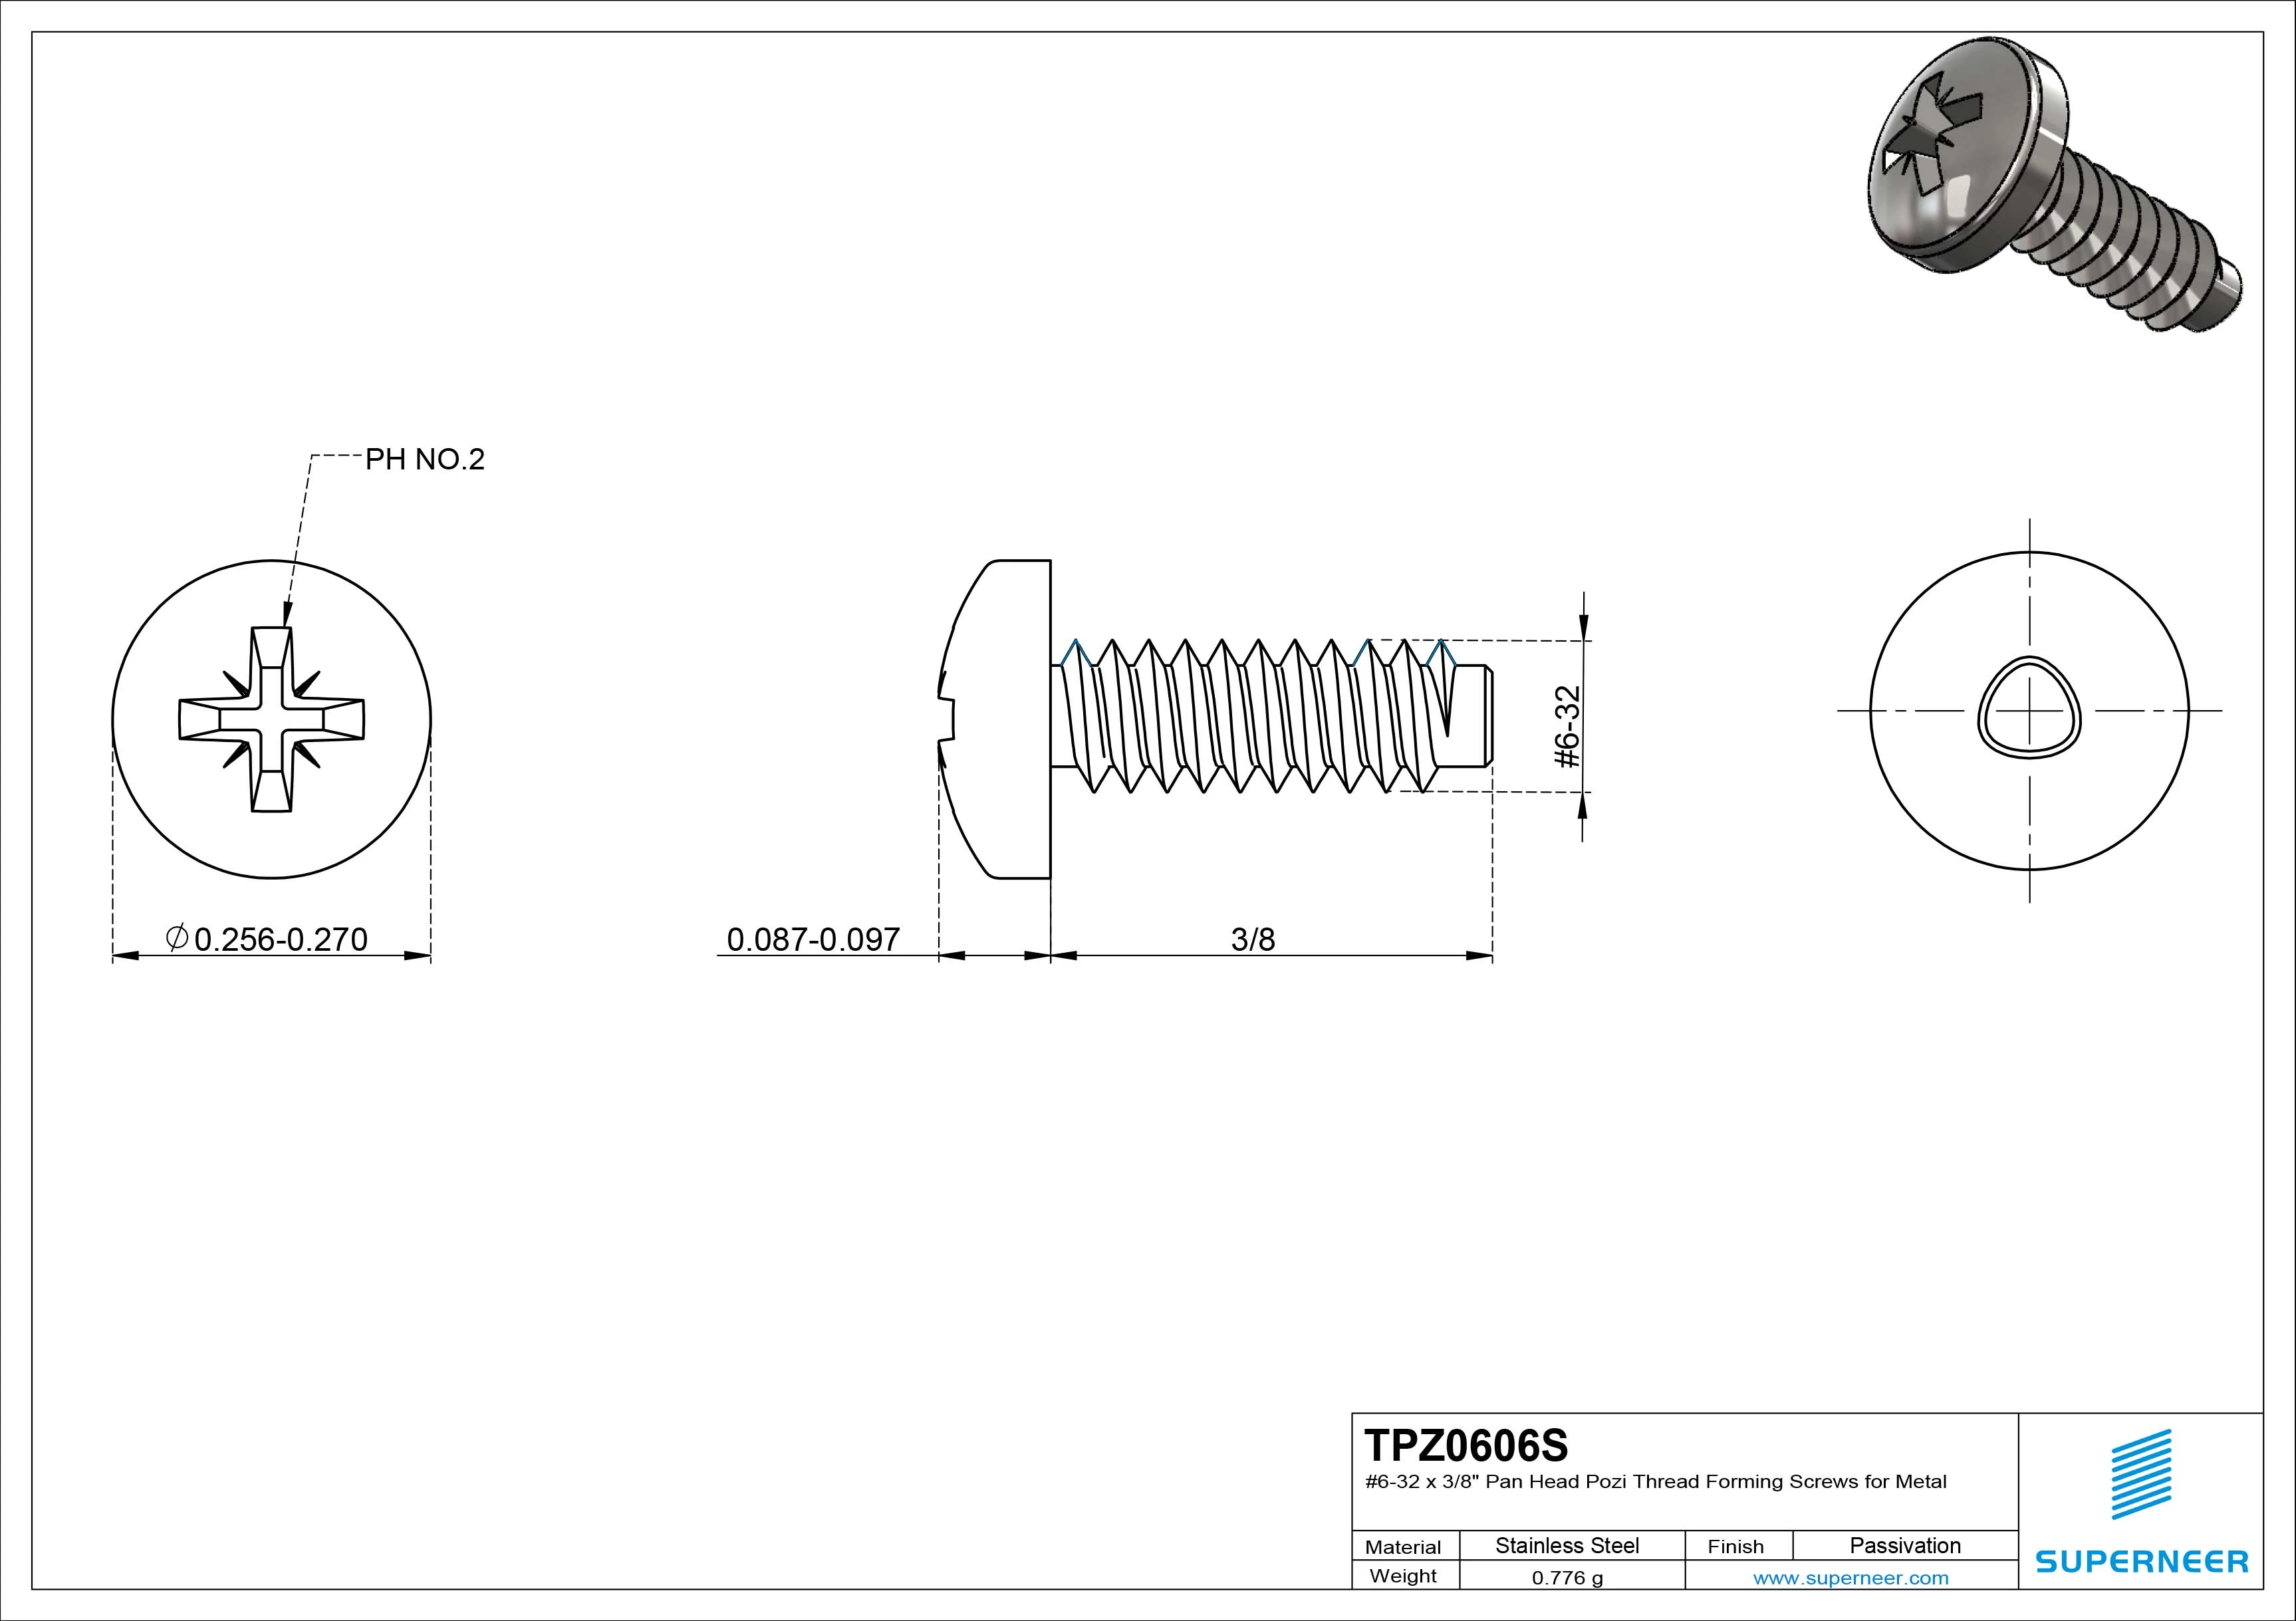 6-32 × 3/8 Pan Head Pozi Thread Forming  Screws for Metal  SUS304 Stainless Steel Inox